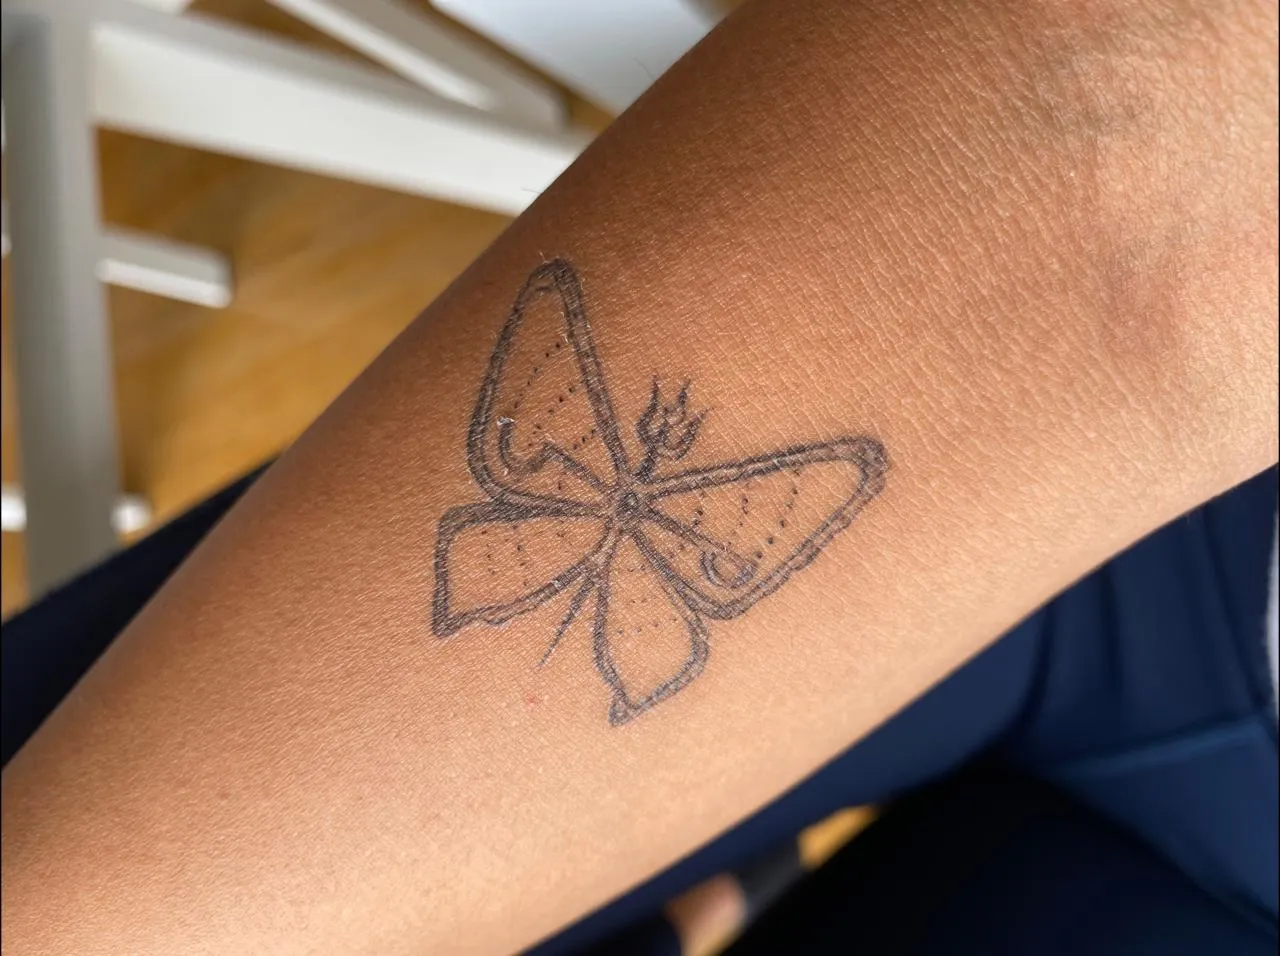 प्रज्ञा कपूर ने अपने पिता की यादों को अंकित करने के लिए अपने हाथ पर टैटू बनवाया।